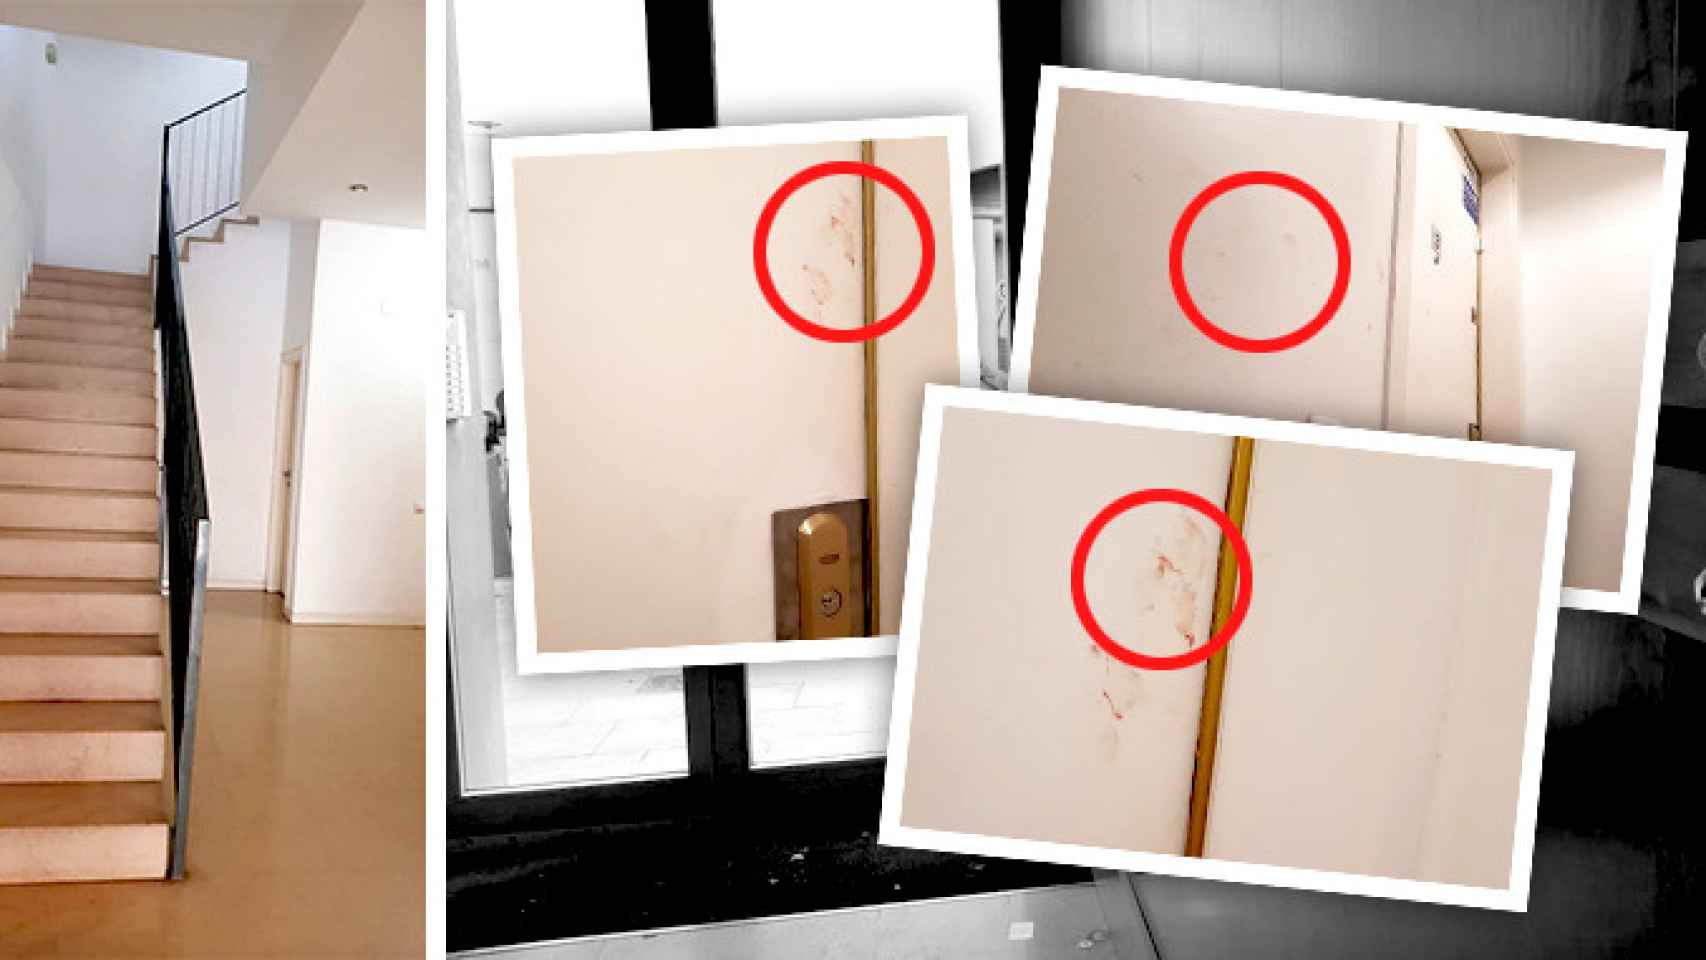 Imágenes de las manchas de sangre en las paredes y la puerta de José tras ser apuñalado / CG